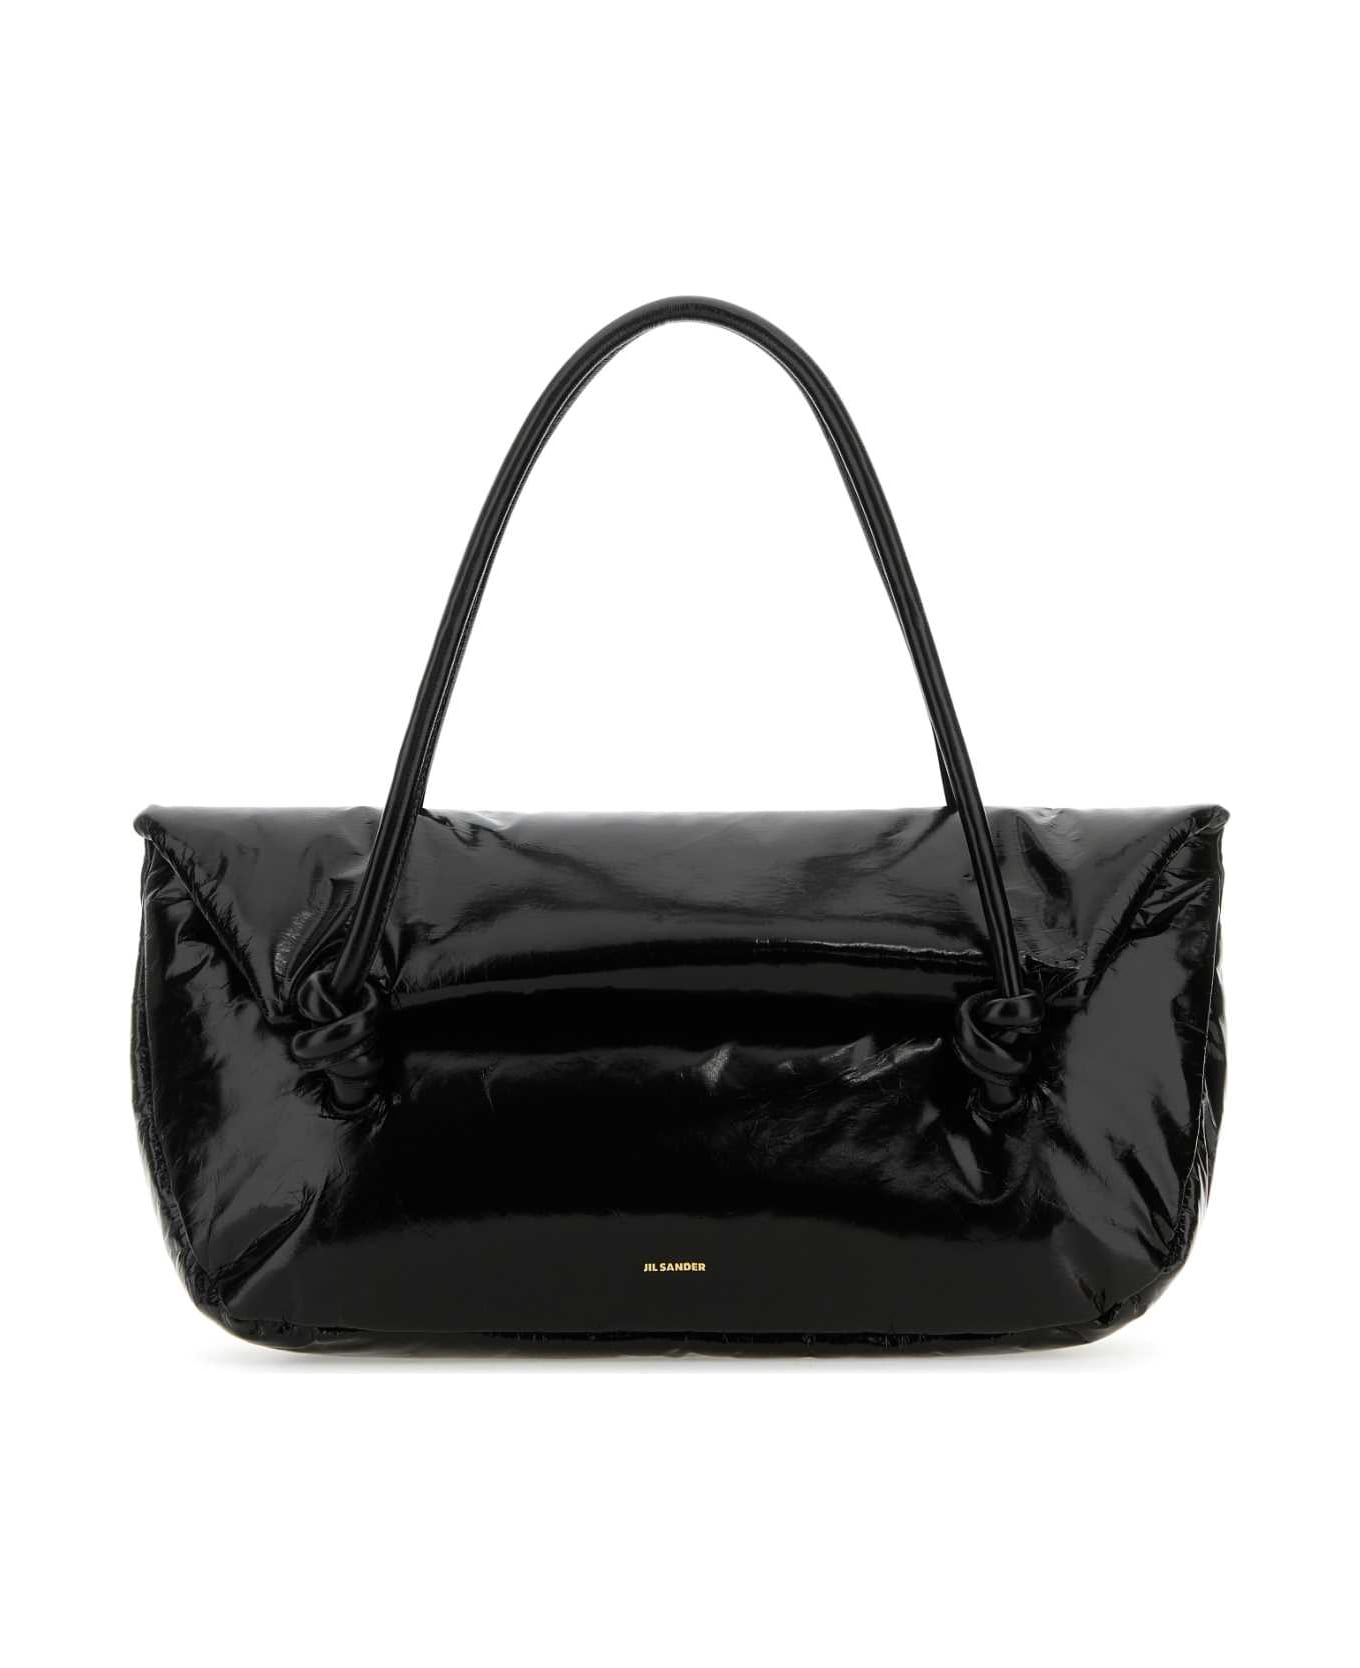 Jil Sander Black Leather Medium Knot Handle Handbag - 001